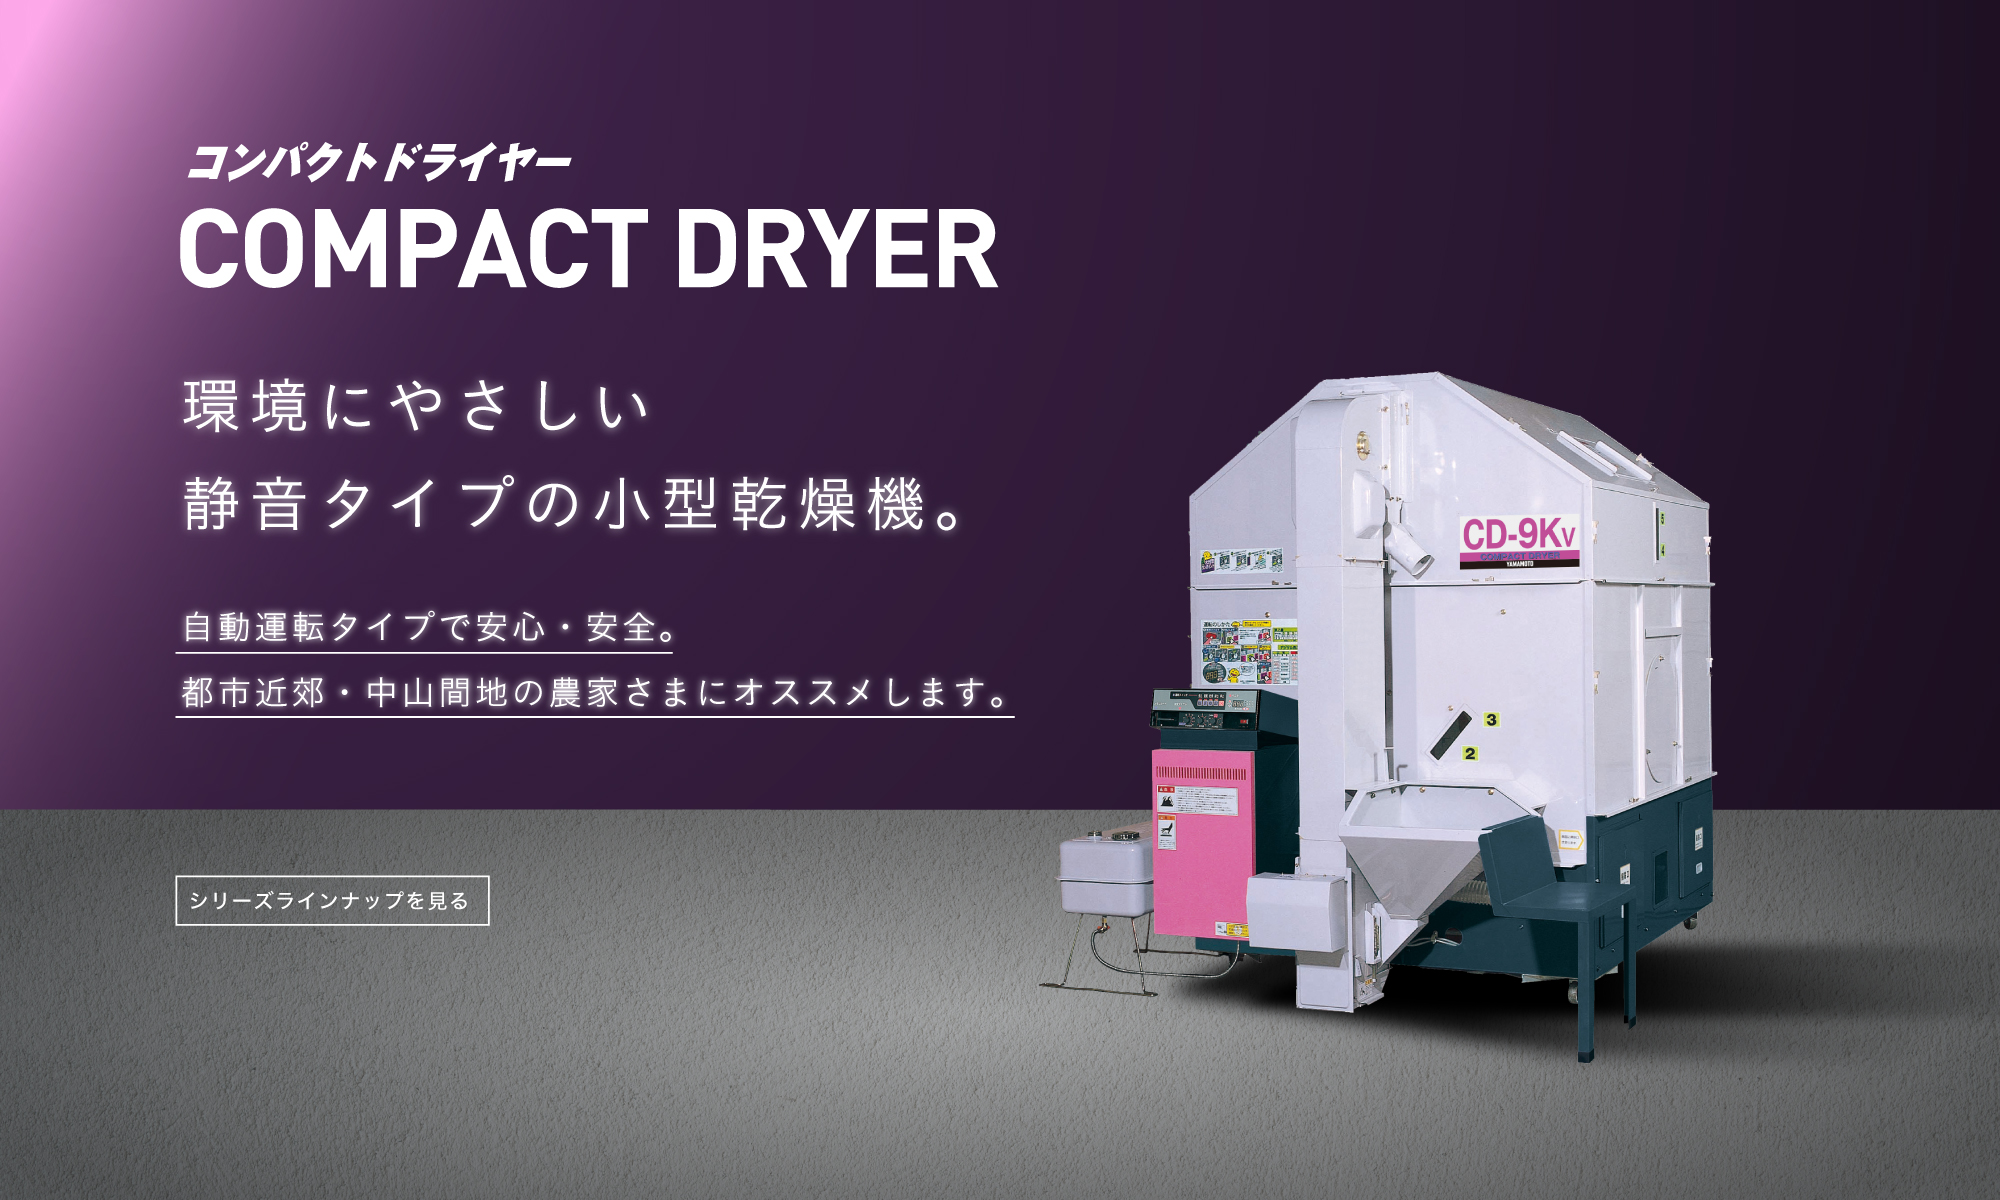 COMPACT DRYER -環境にやさしい静音タイプの小型乾燥機。-